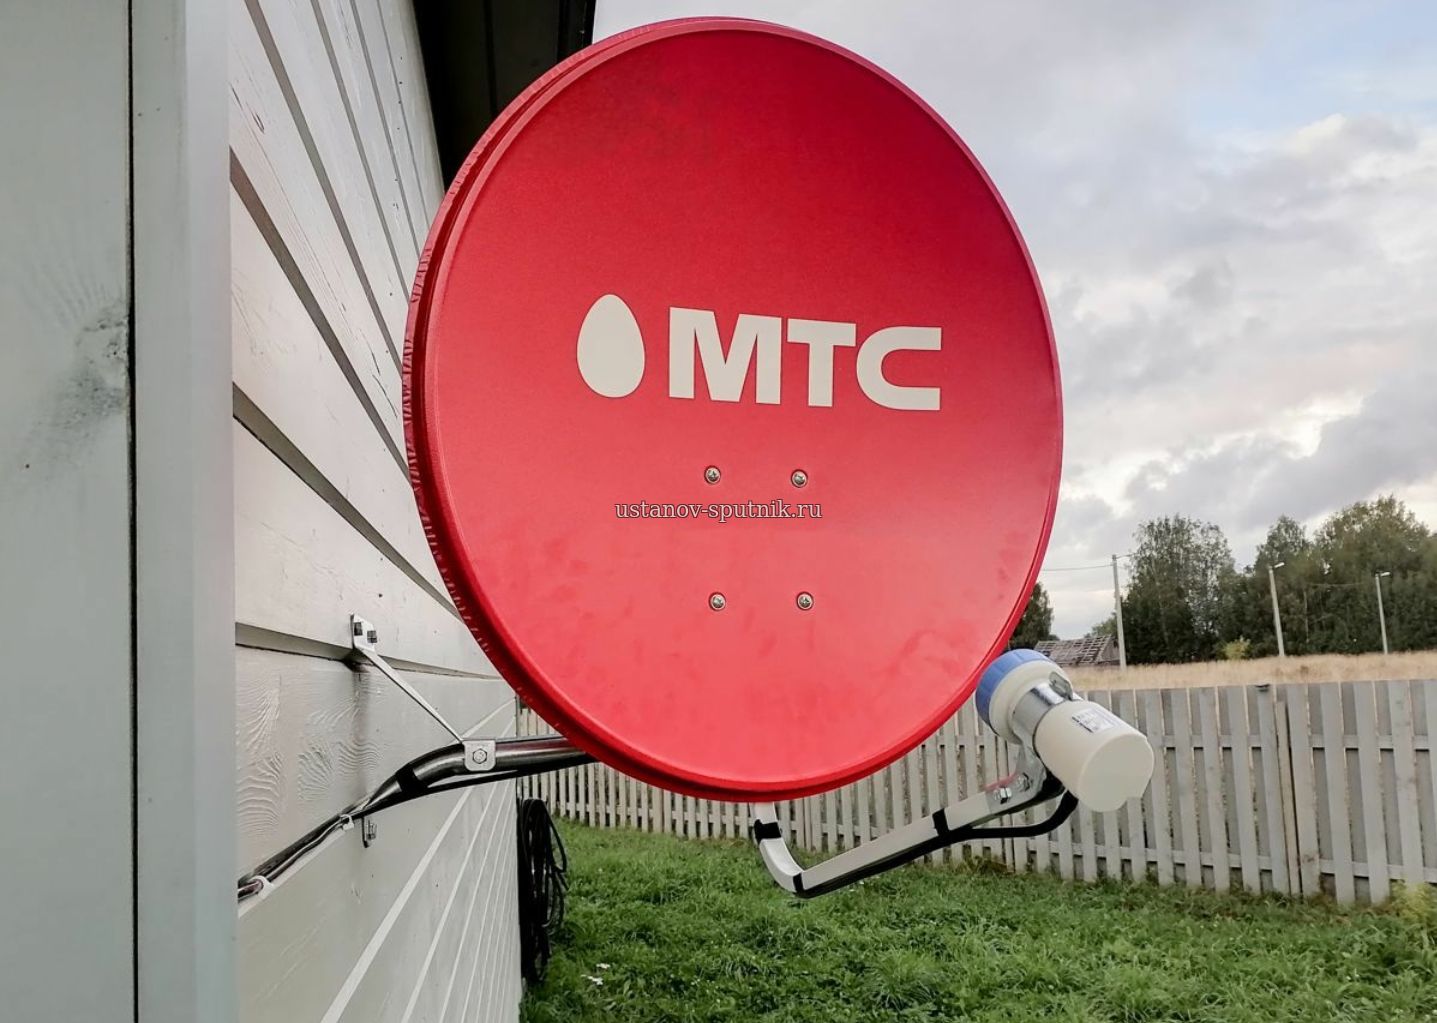 Спутниковая антенна МТС установлена на стене частного дома, кабель проведен в домик, установка проводилась в Первомайском районе Новосибирска